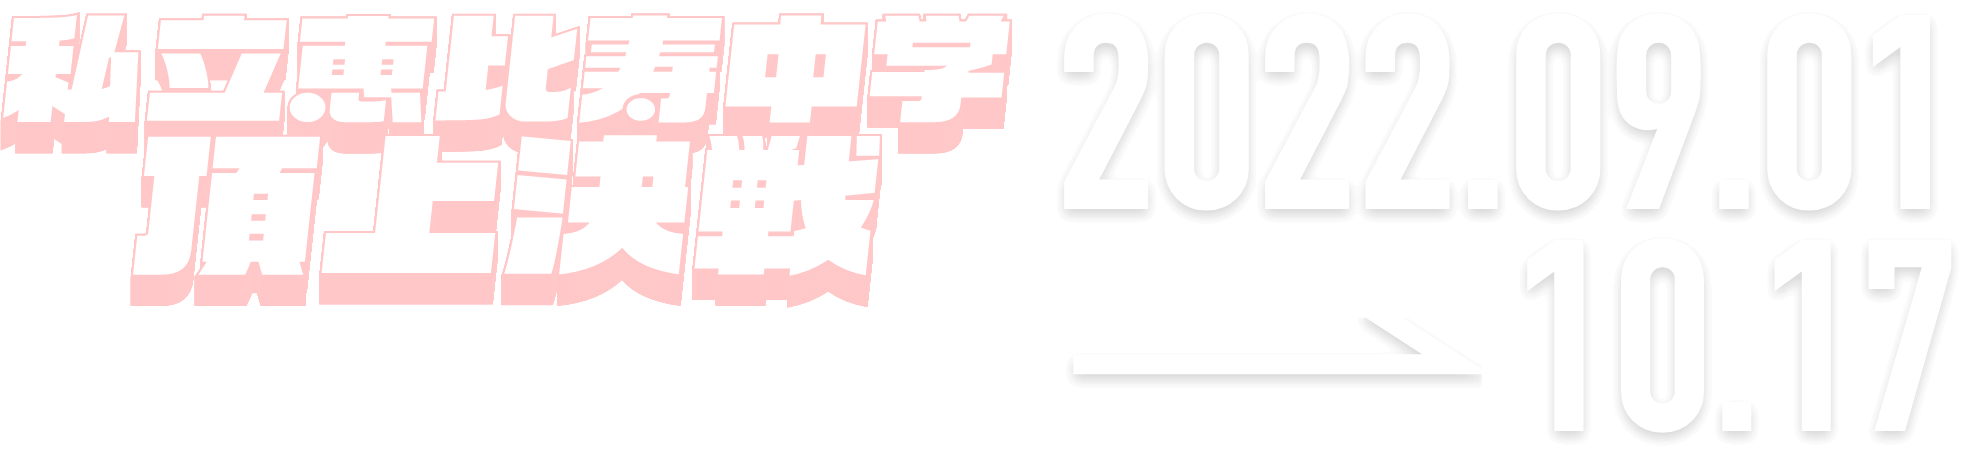 私立恵比寿中学頂上決戦 supported by lords mobile 2022.09.01 → 10.17